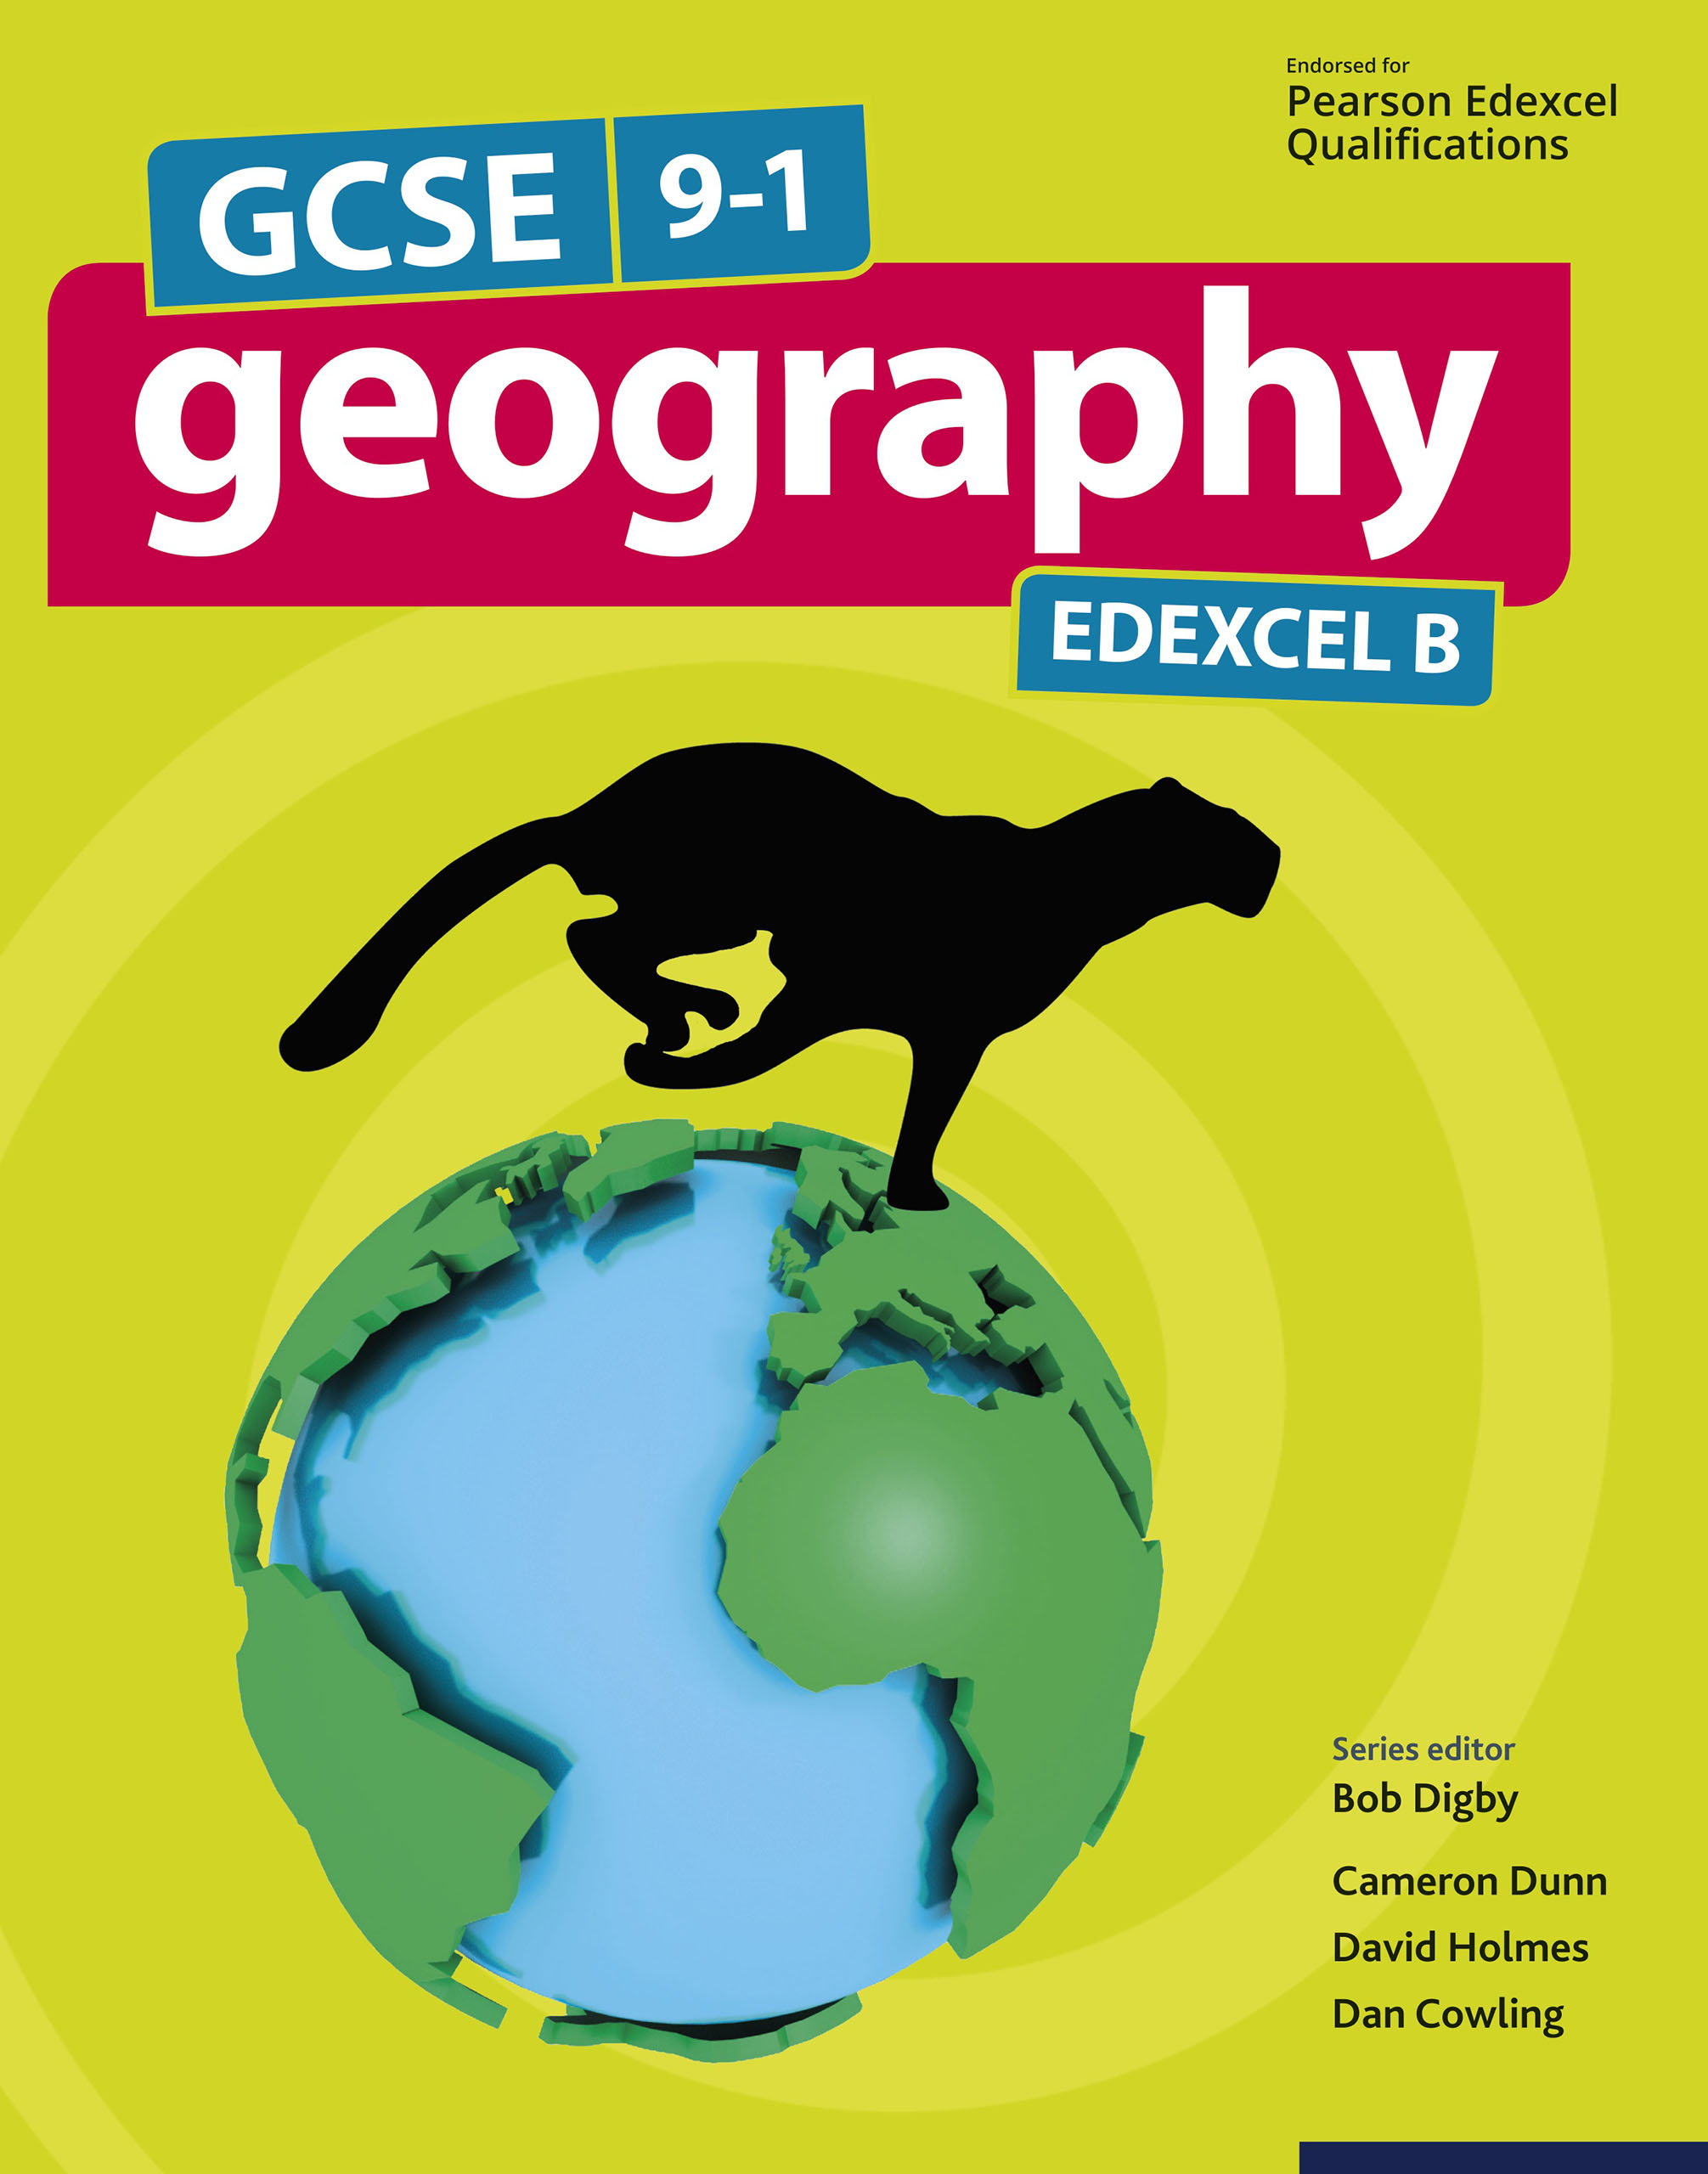 GCSE 9-1 Geography EDEXCEL B